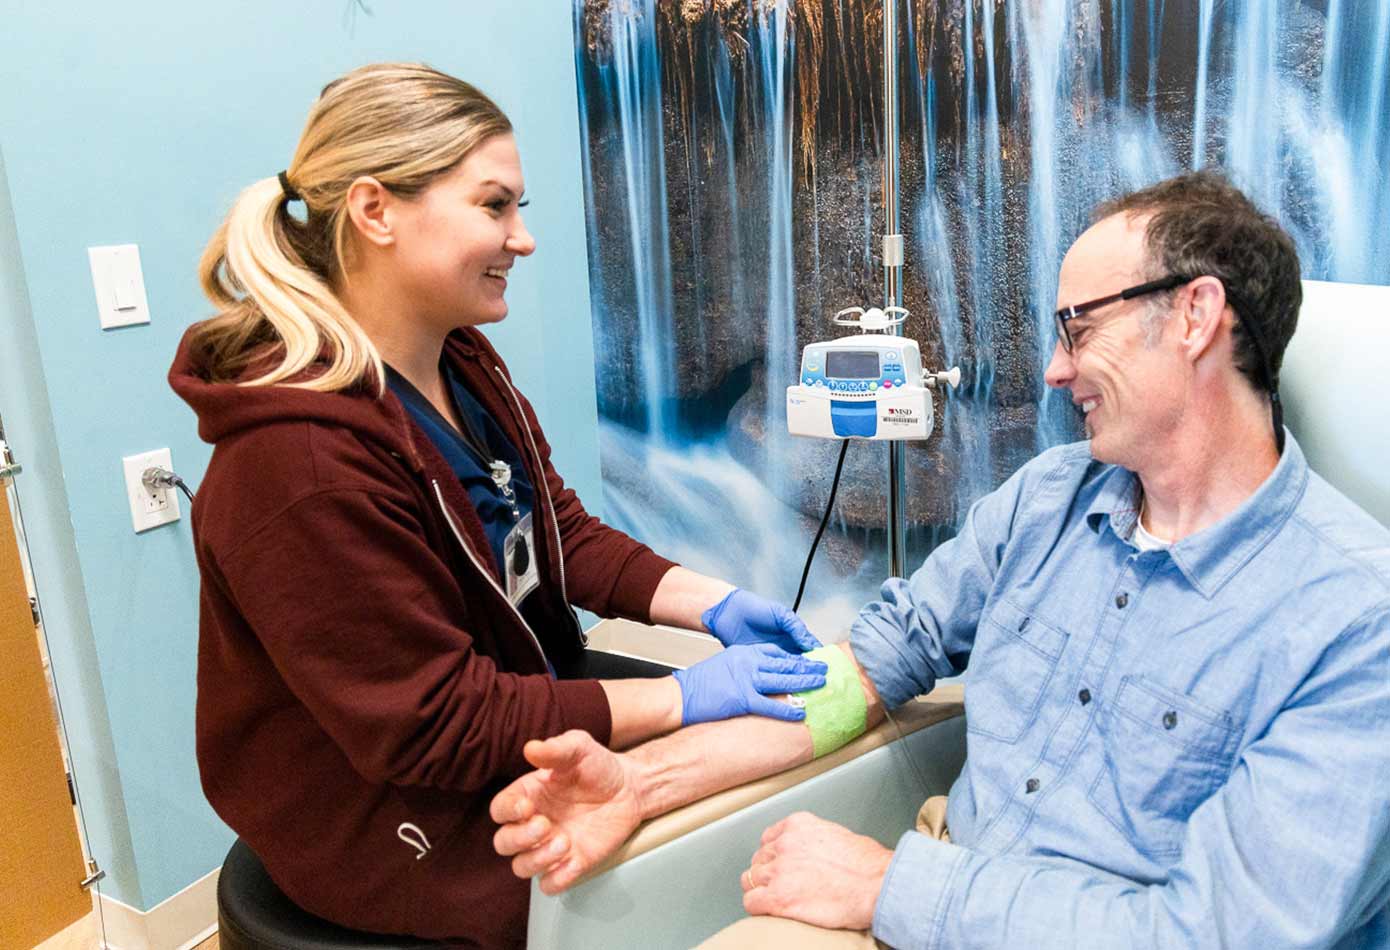 A nurse helps a man get an IV